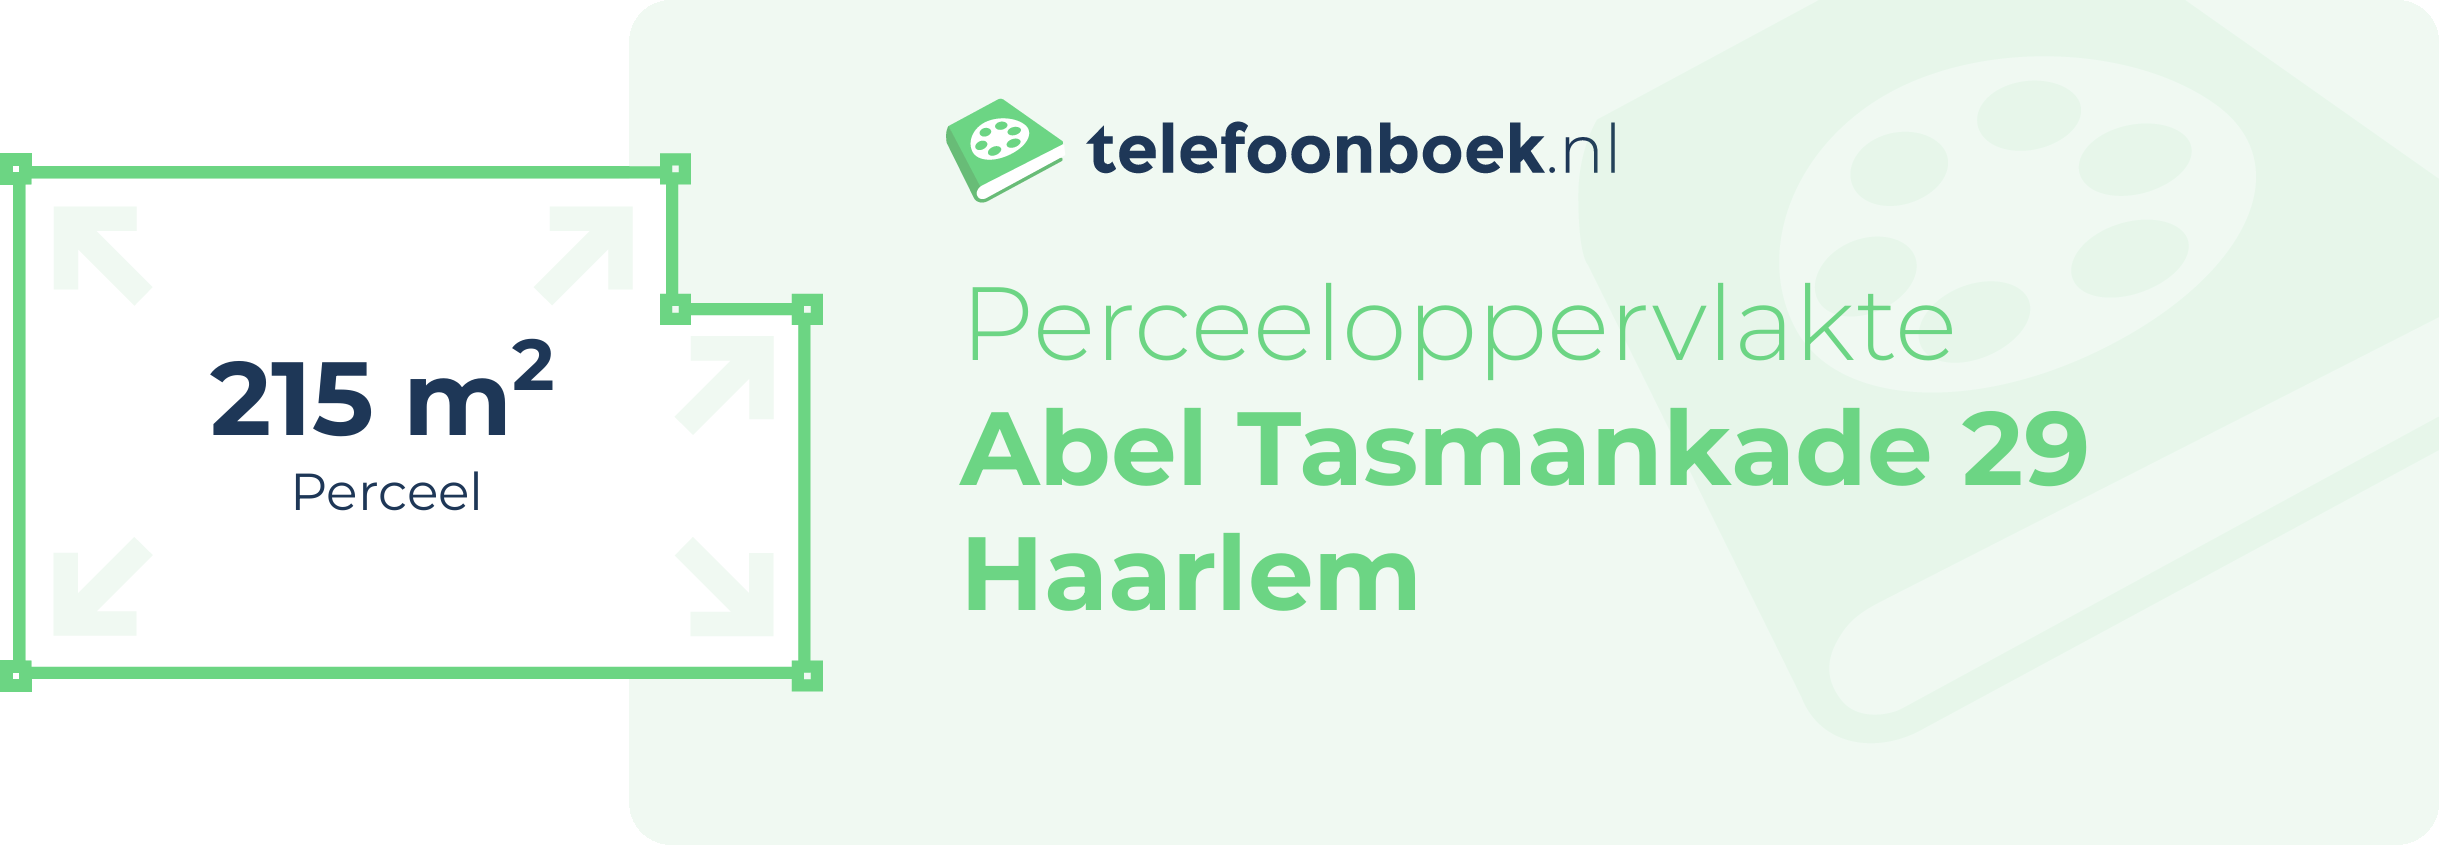 Perceeloppervlakte Abel Tasmankade 29 Haarlem